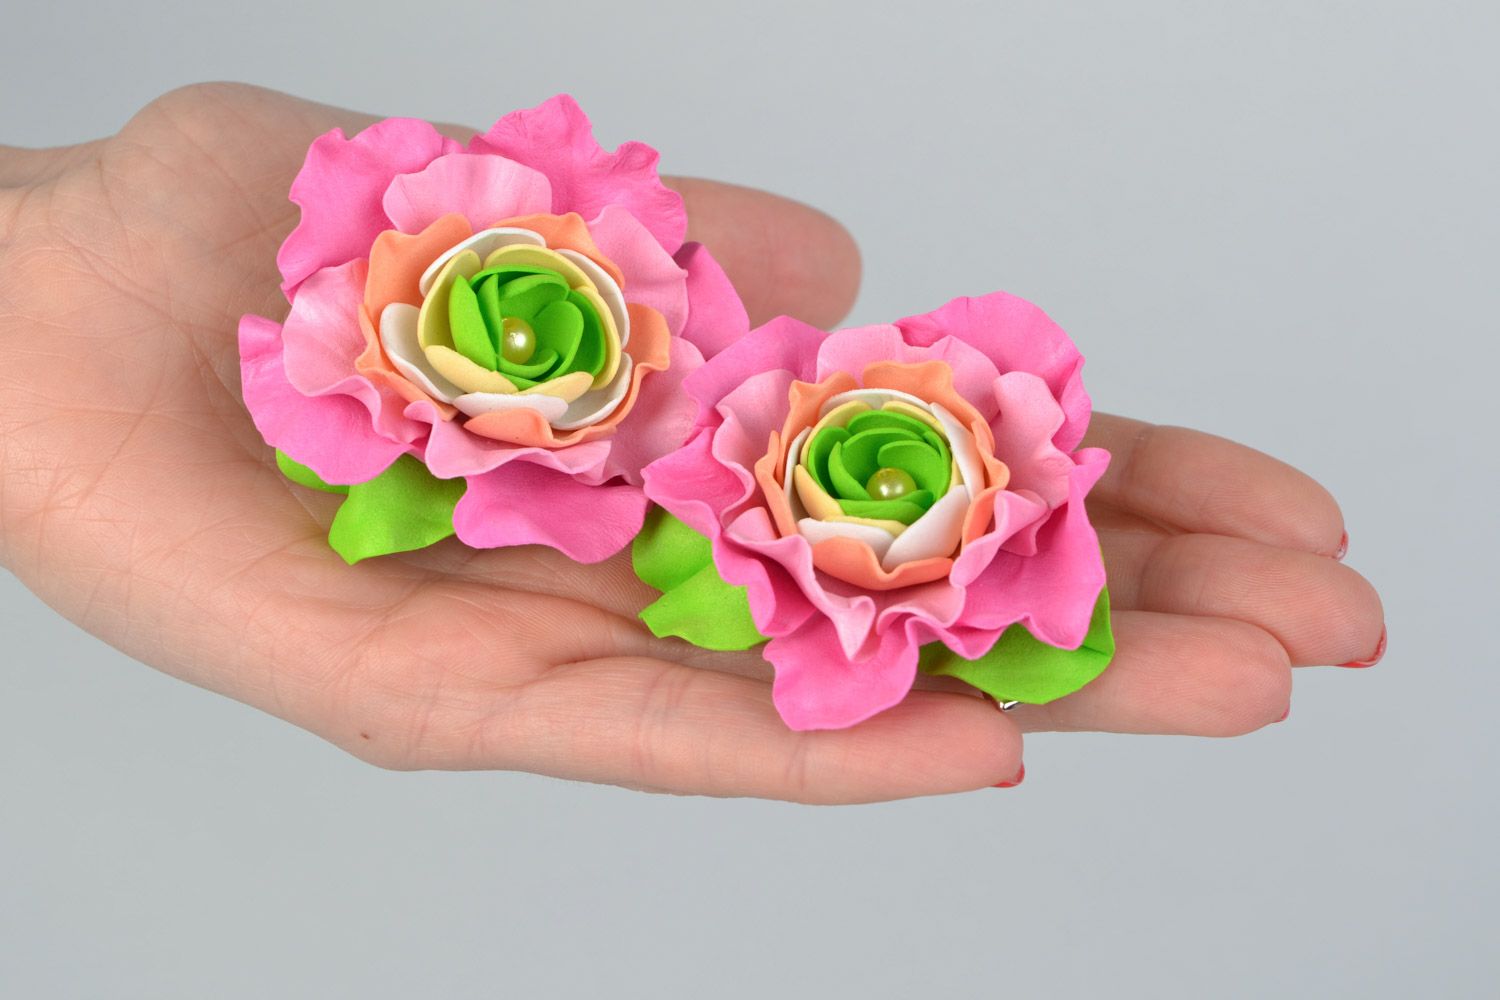 Заколки из фоамирана набор 2 штуки ручной работы цветы розовые с зеленым красивые фото 2